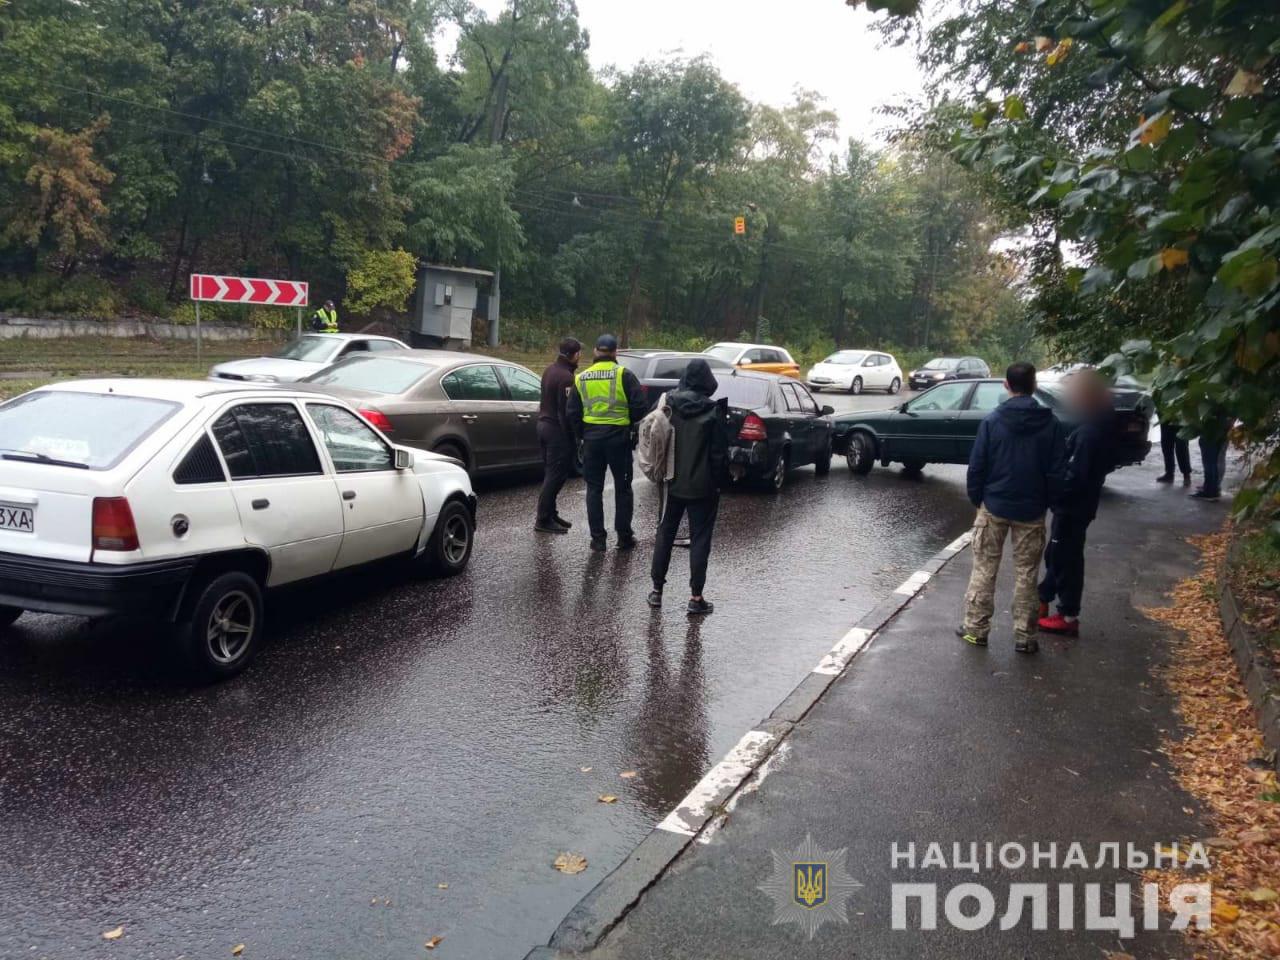 ДТП Харьков: На улице Веснина столкнулись пять машин - Geely, Opel, Audi, Volkswagen Passat и Lincoln